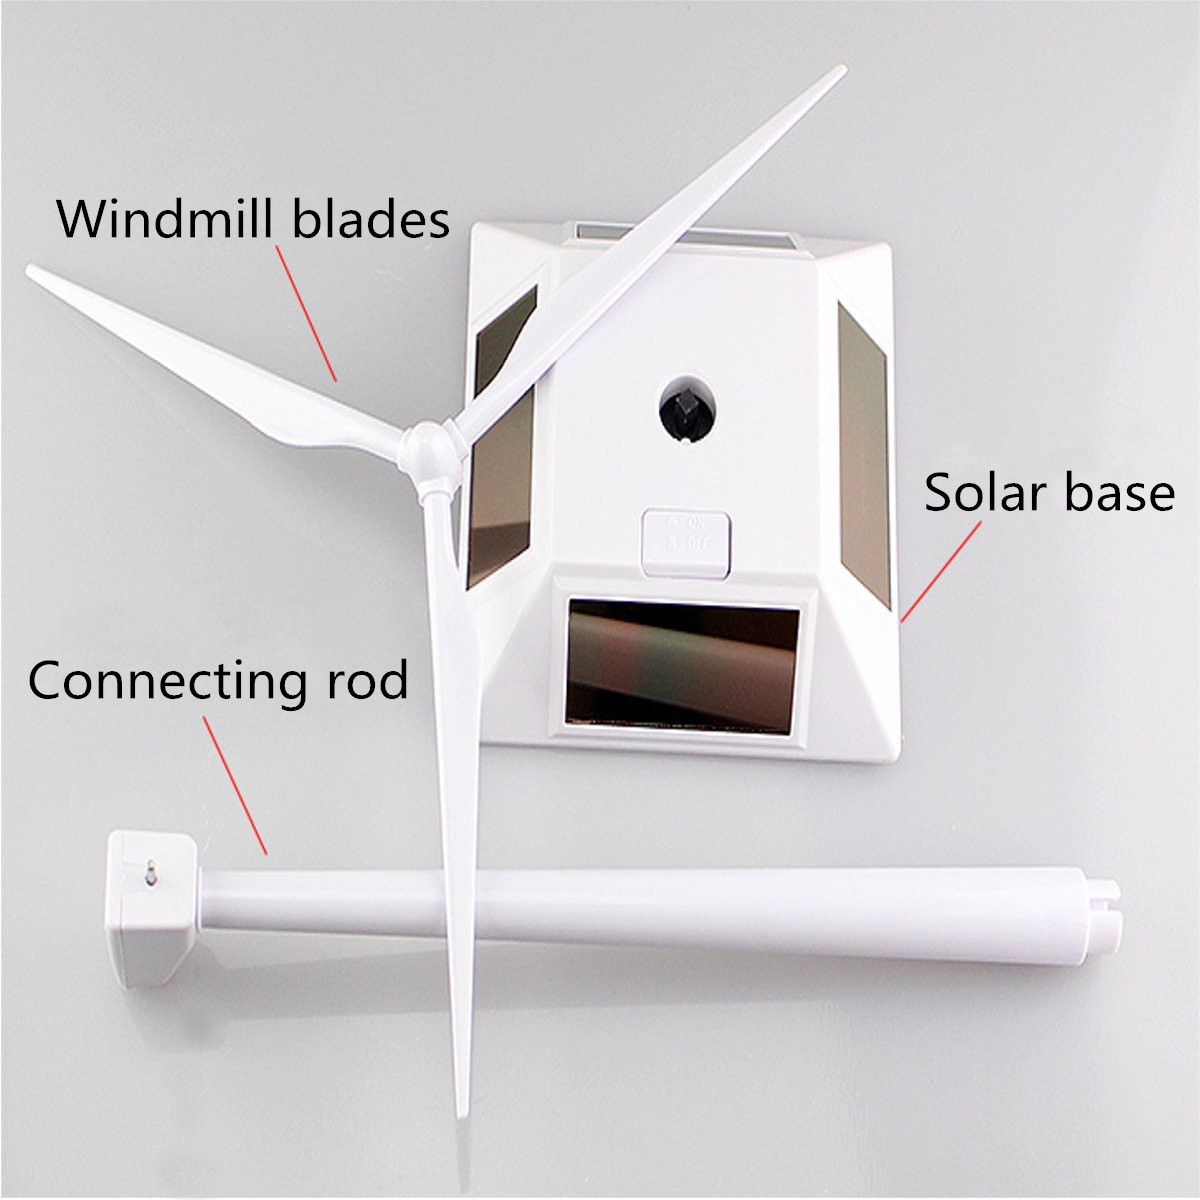 Plastic-Solar-Powered-Windmill-Wind-Mill-Turbine-Teaching-Tool--Desktop-Display-Tray-Holder-1059506-8